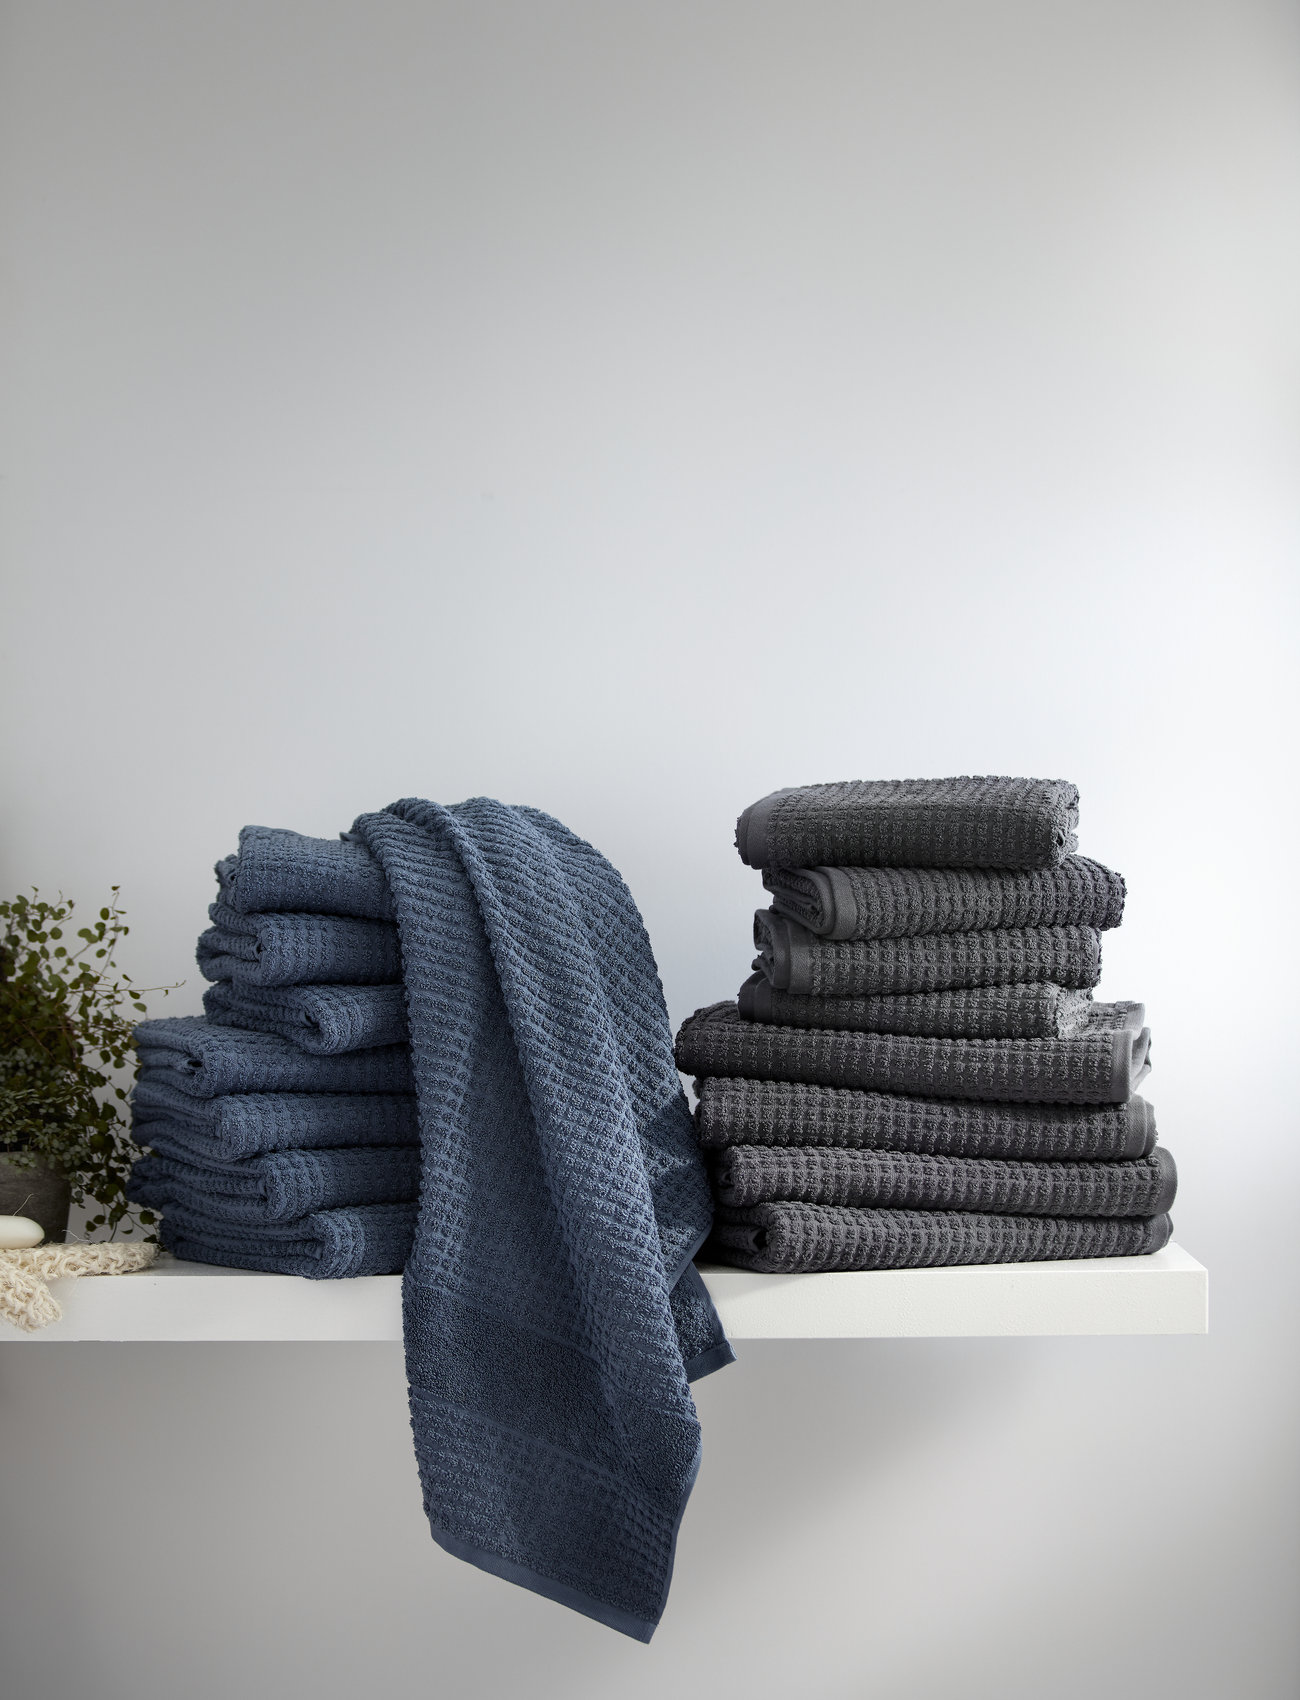 Juna - Check Håndklær 70x140 4 pcs, 50x100 2 pcs. (615057) mørk grå - de laveste prisene - dark grey - 1